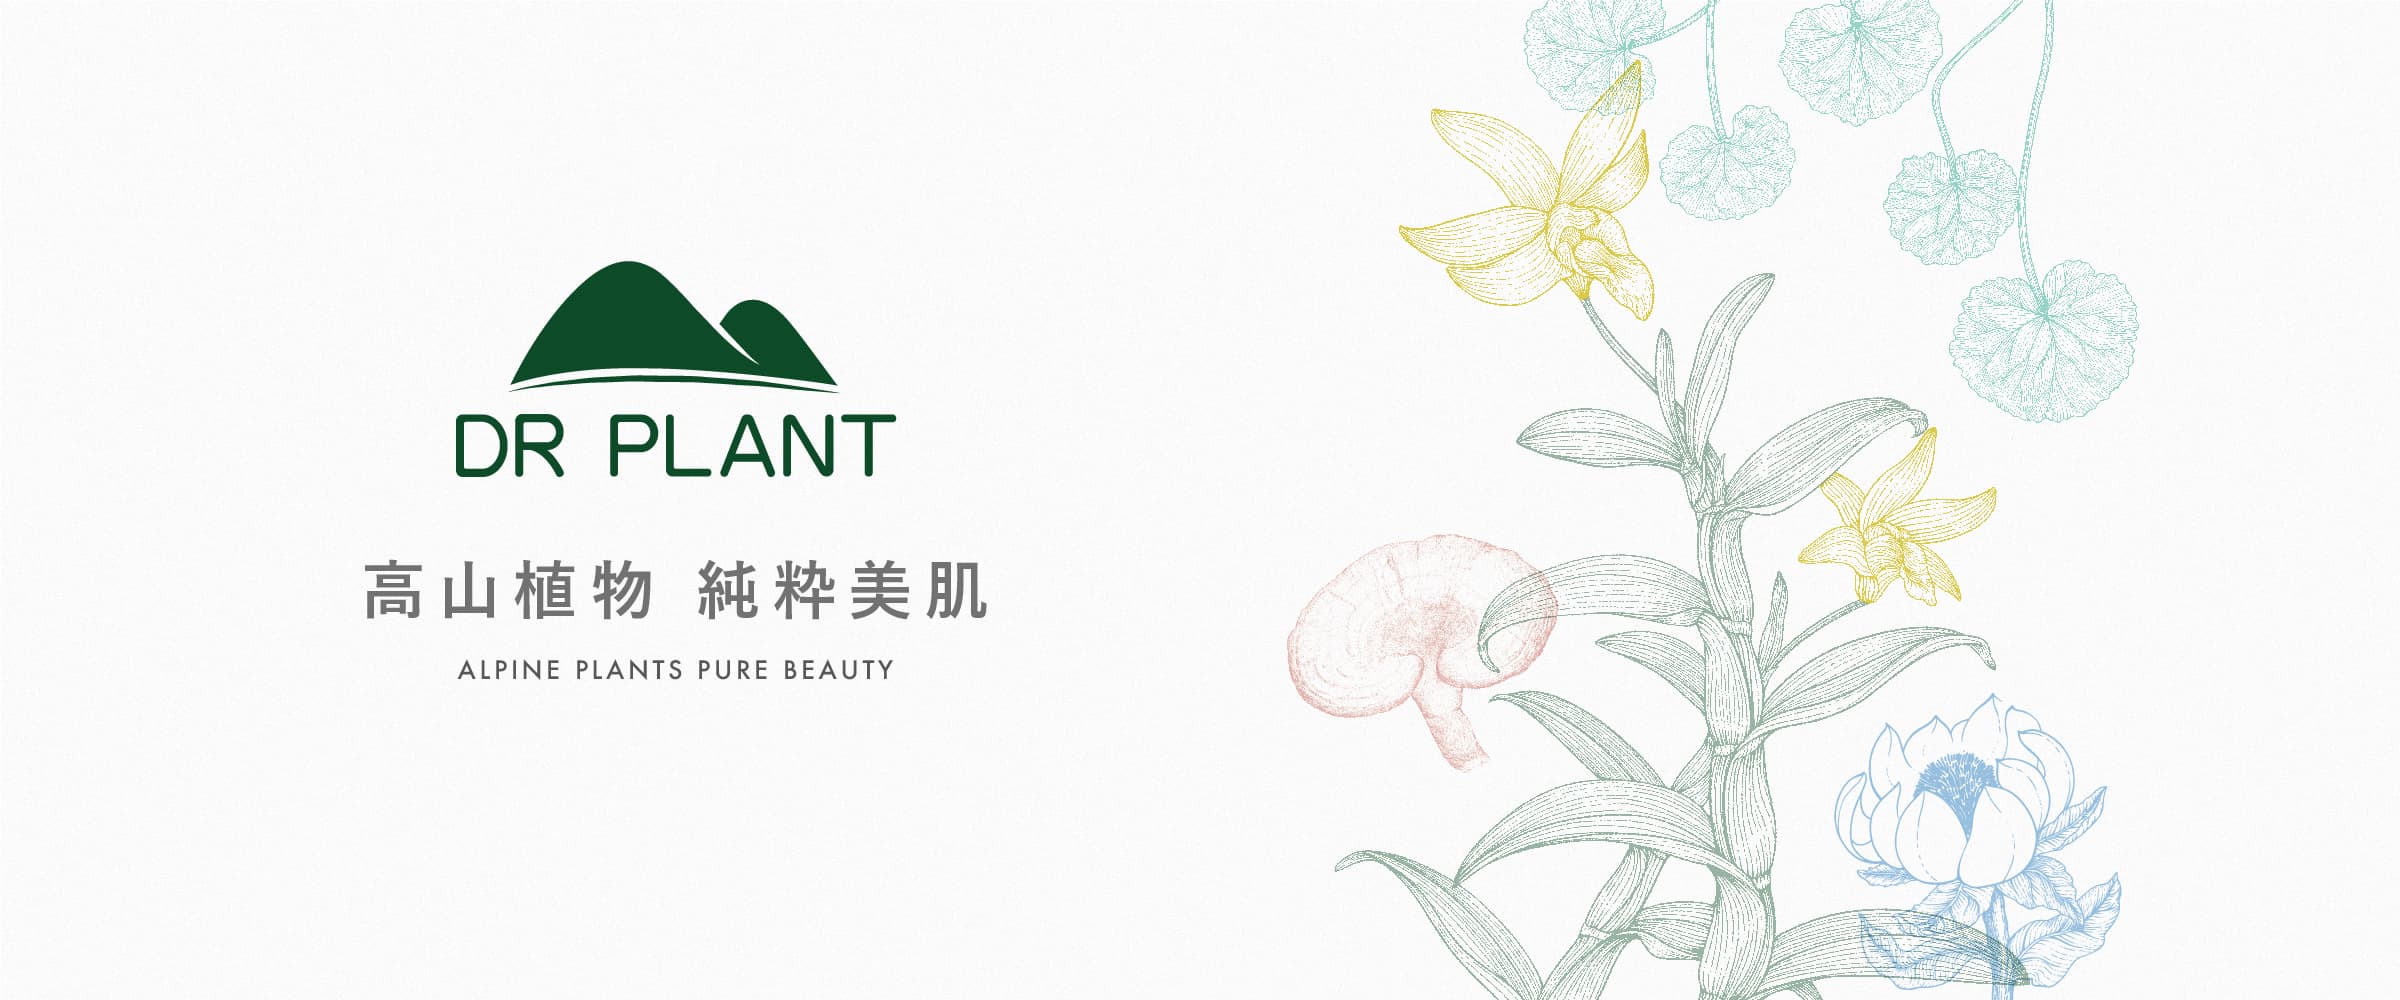 DR PLANT | 高山植物 純粋美肌